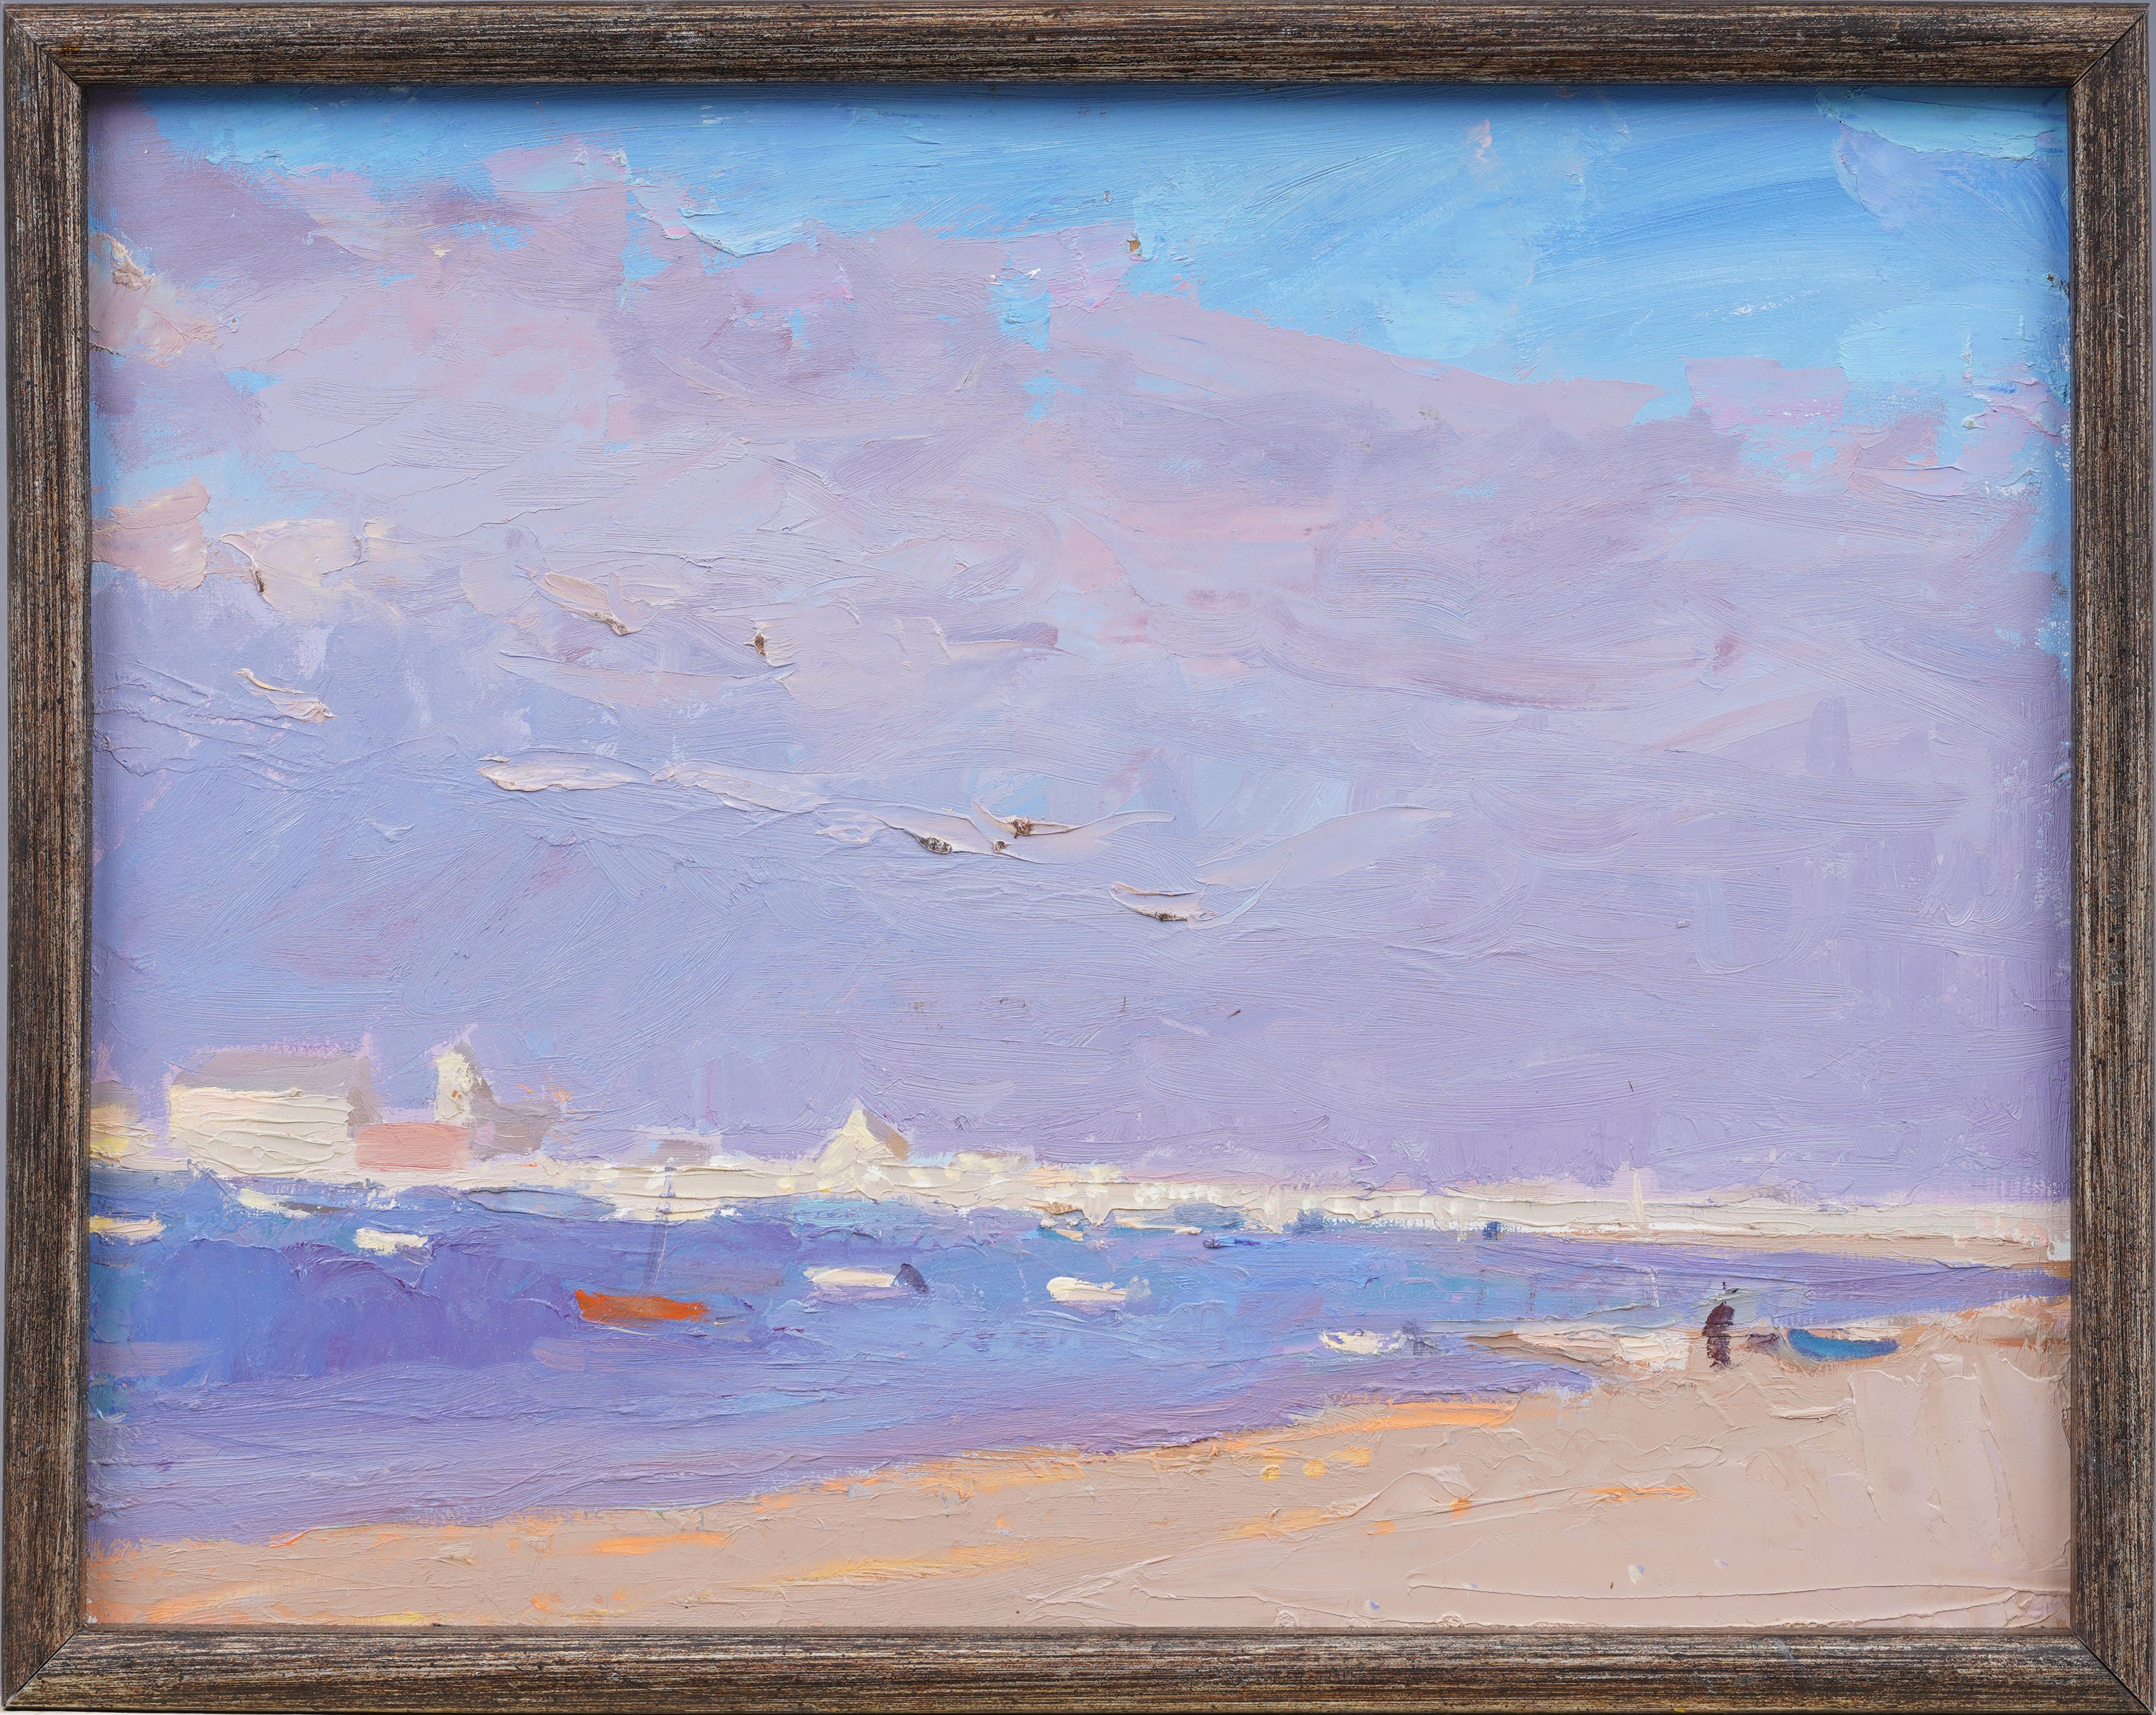 Impressive mid 20th century impressionist beach scene.  Oil on board.  Framed.  No signature found.